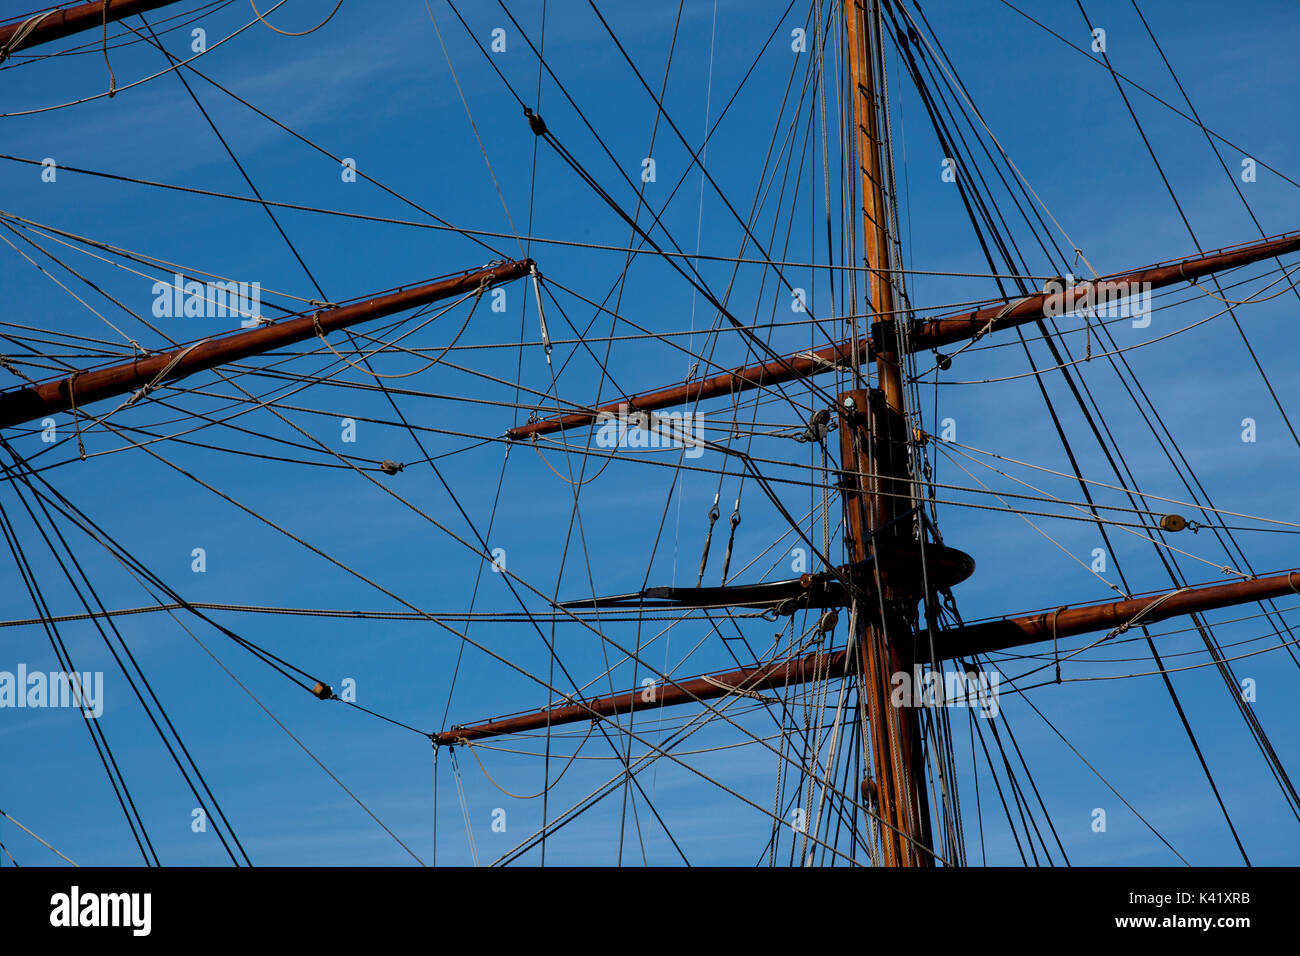 Vecchia nave a vela - dettaglio Foto Stock